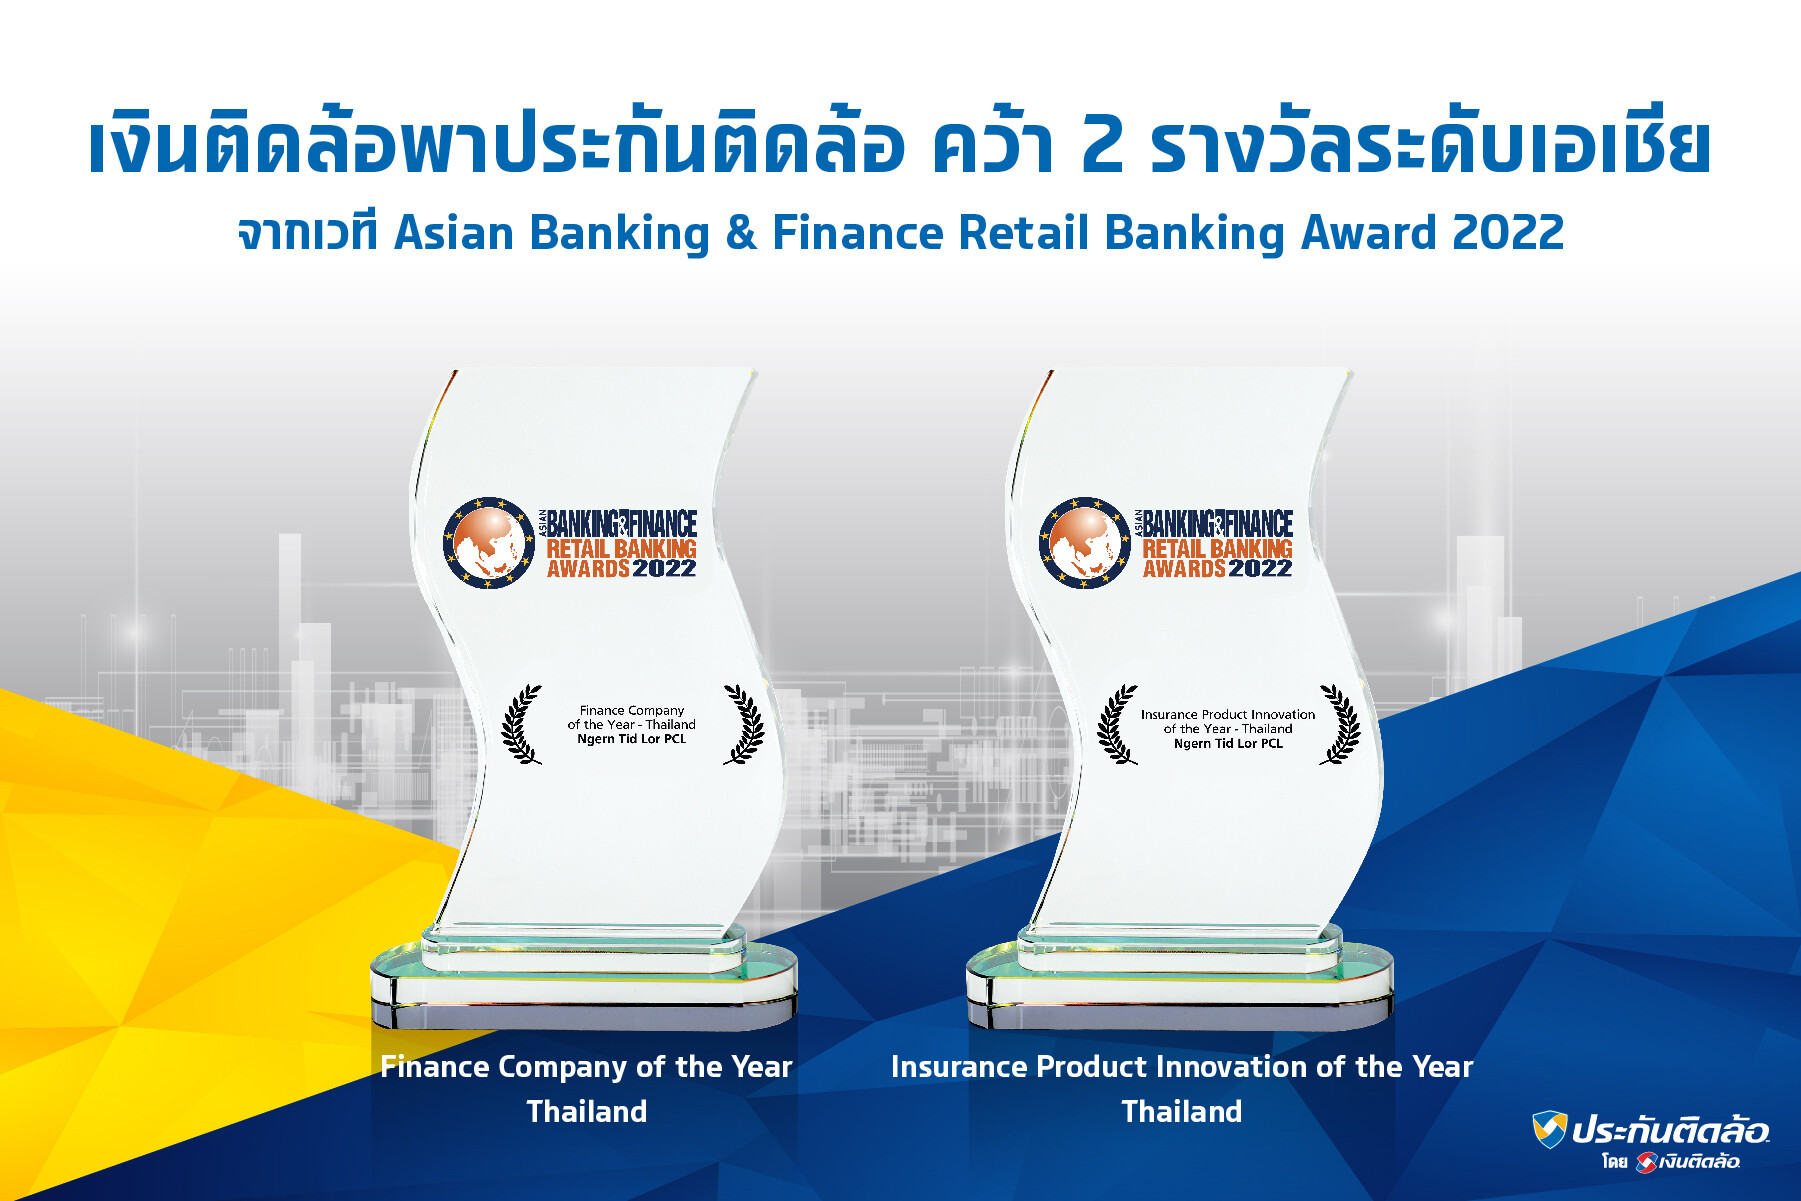 "เงินติดล้อ" พา "ประกันติดล้อ" คว้า 2 รางวัลระดับเอเชีย จาก Asian Banking & Finance Retail Banking Awards  2022